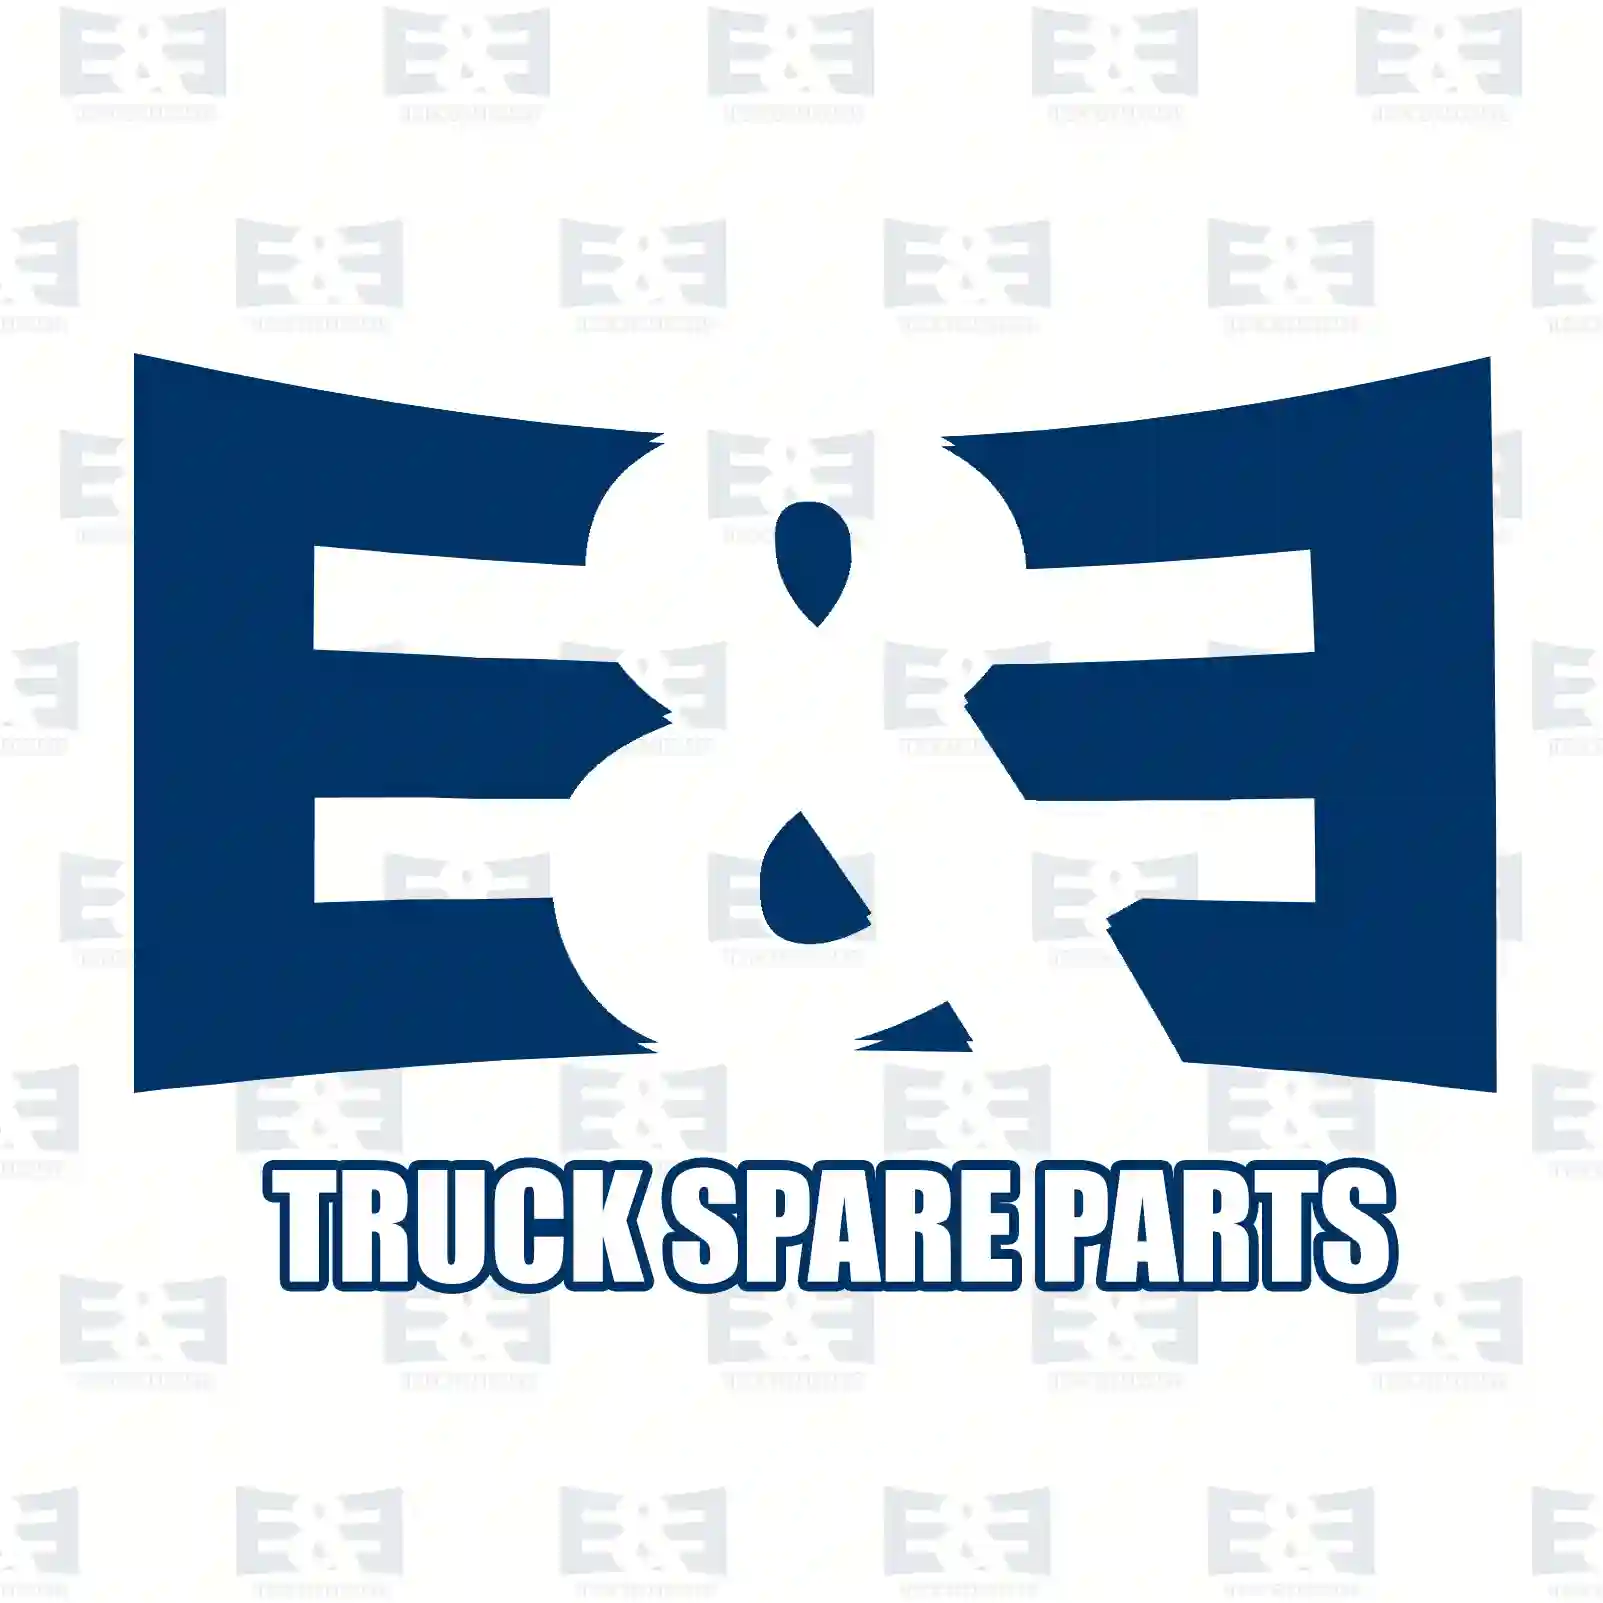 Repair kit, air dryer, 2E2293300, 1753577S2, 1763425S2, 1770184S2, 1796161S2, 1897631S2, 1928589S2, 1941953S2, 2063357S2, 2308777S2 ||  2E2293300 E&E Truck Spare Parts | Truck Spare Parts, Auotomotive Spare Parts Repair kit, air dryer, 2E2293300, 1753577S2, 1763425S2, 1770184S2, 1796161S2, 1897631S2, 1928589S2, 1941953S2, 2063357S2, 2308777S2 ||  2E2293300 E&E Truck Spare Parts | Truck Spare Parts, Auotomotive Spare Parts